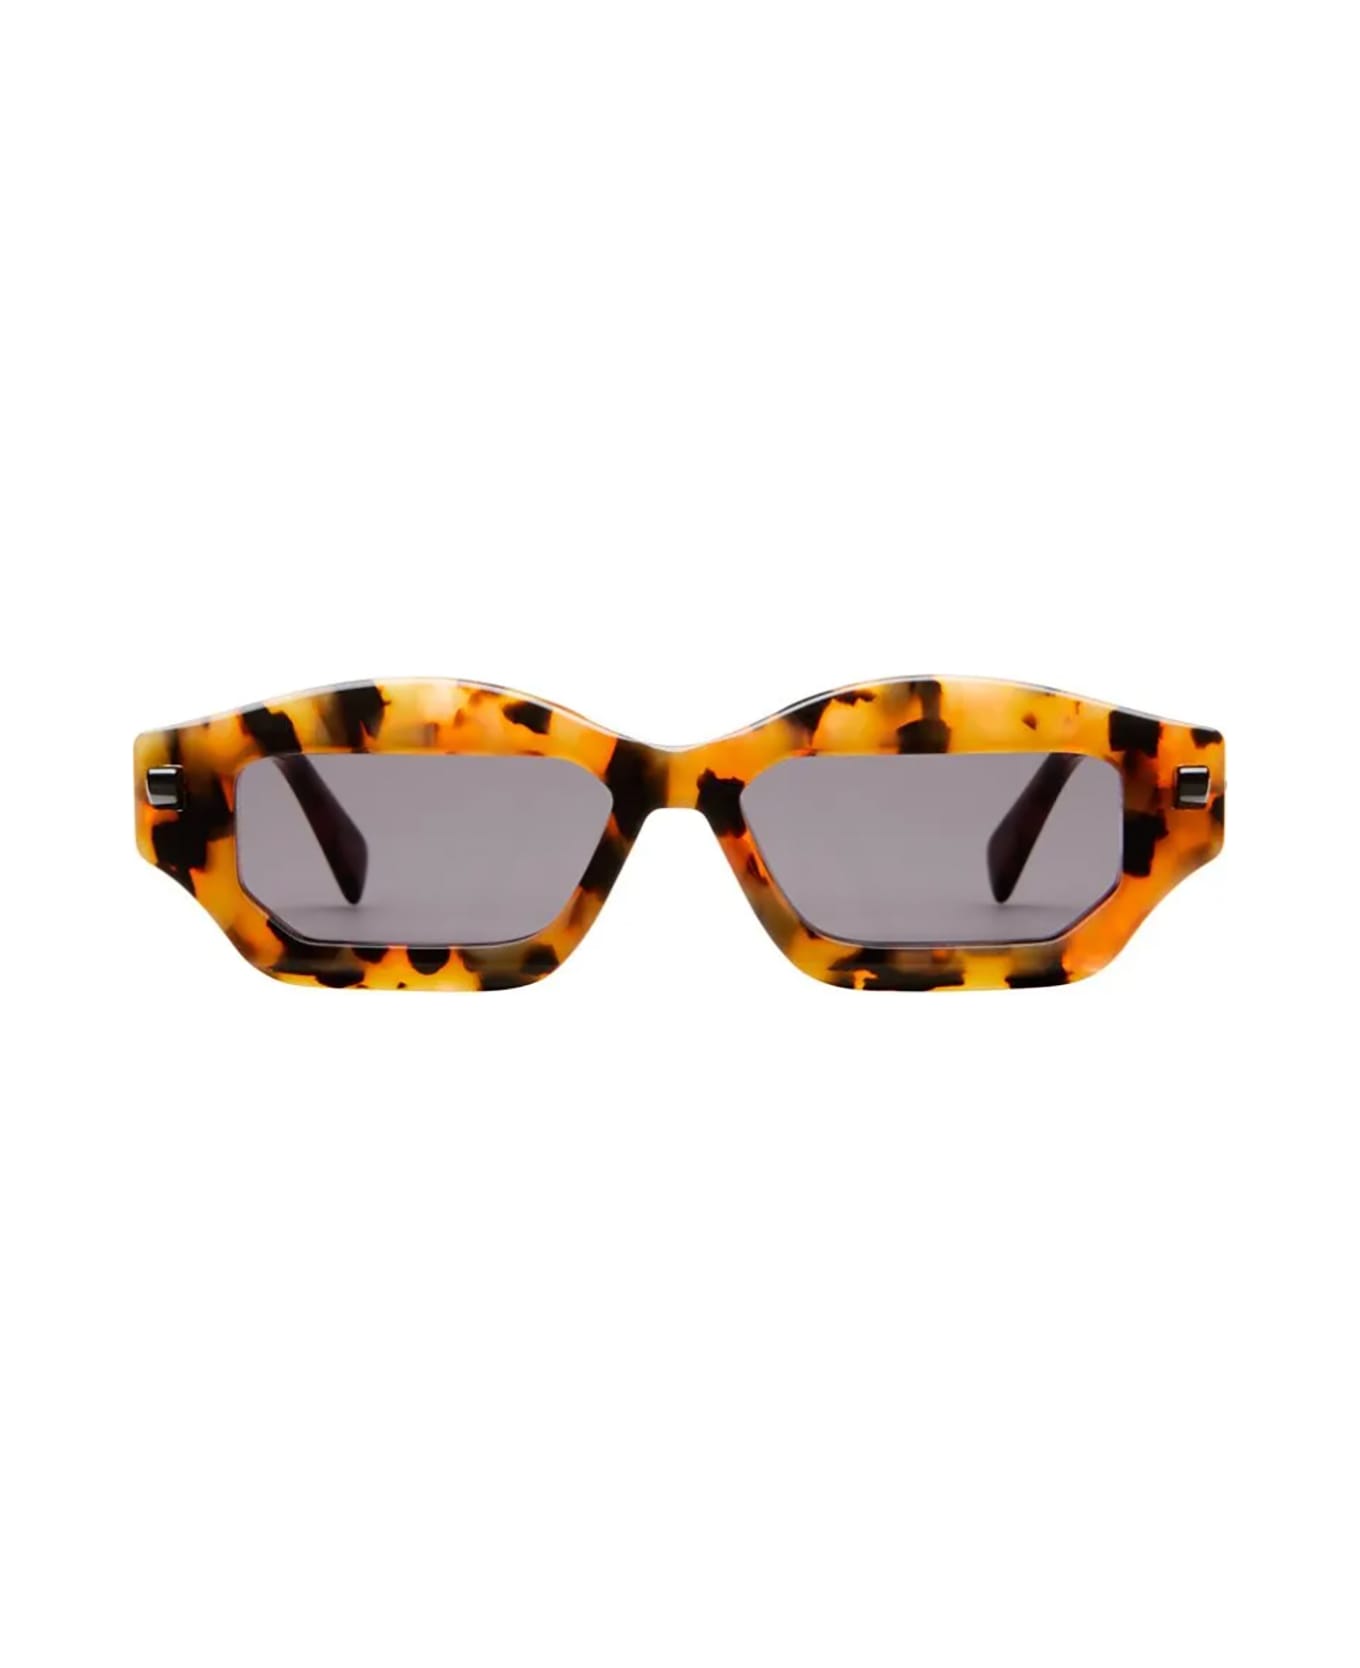 Kuboraum Q6 Sunglasses - Hx